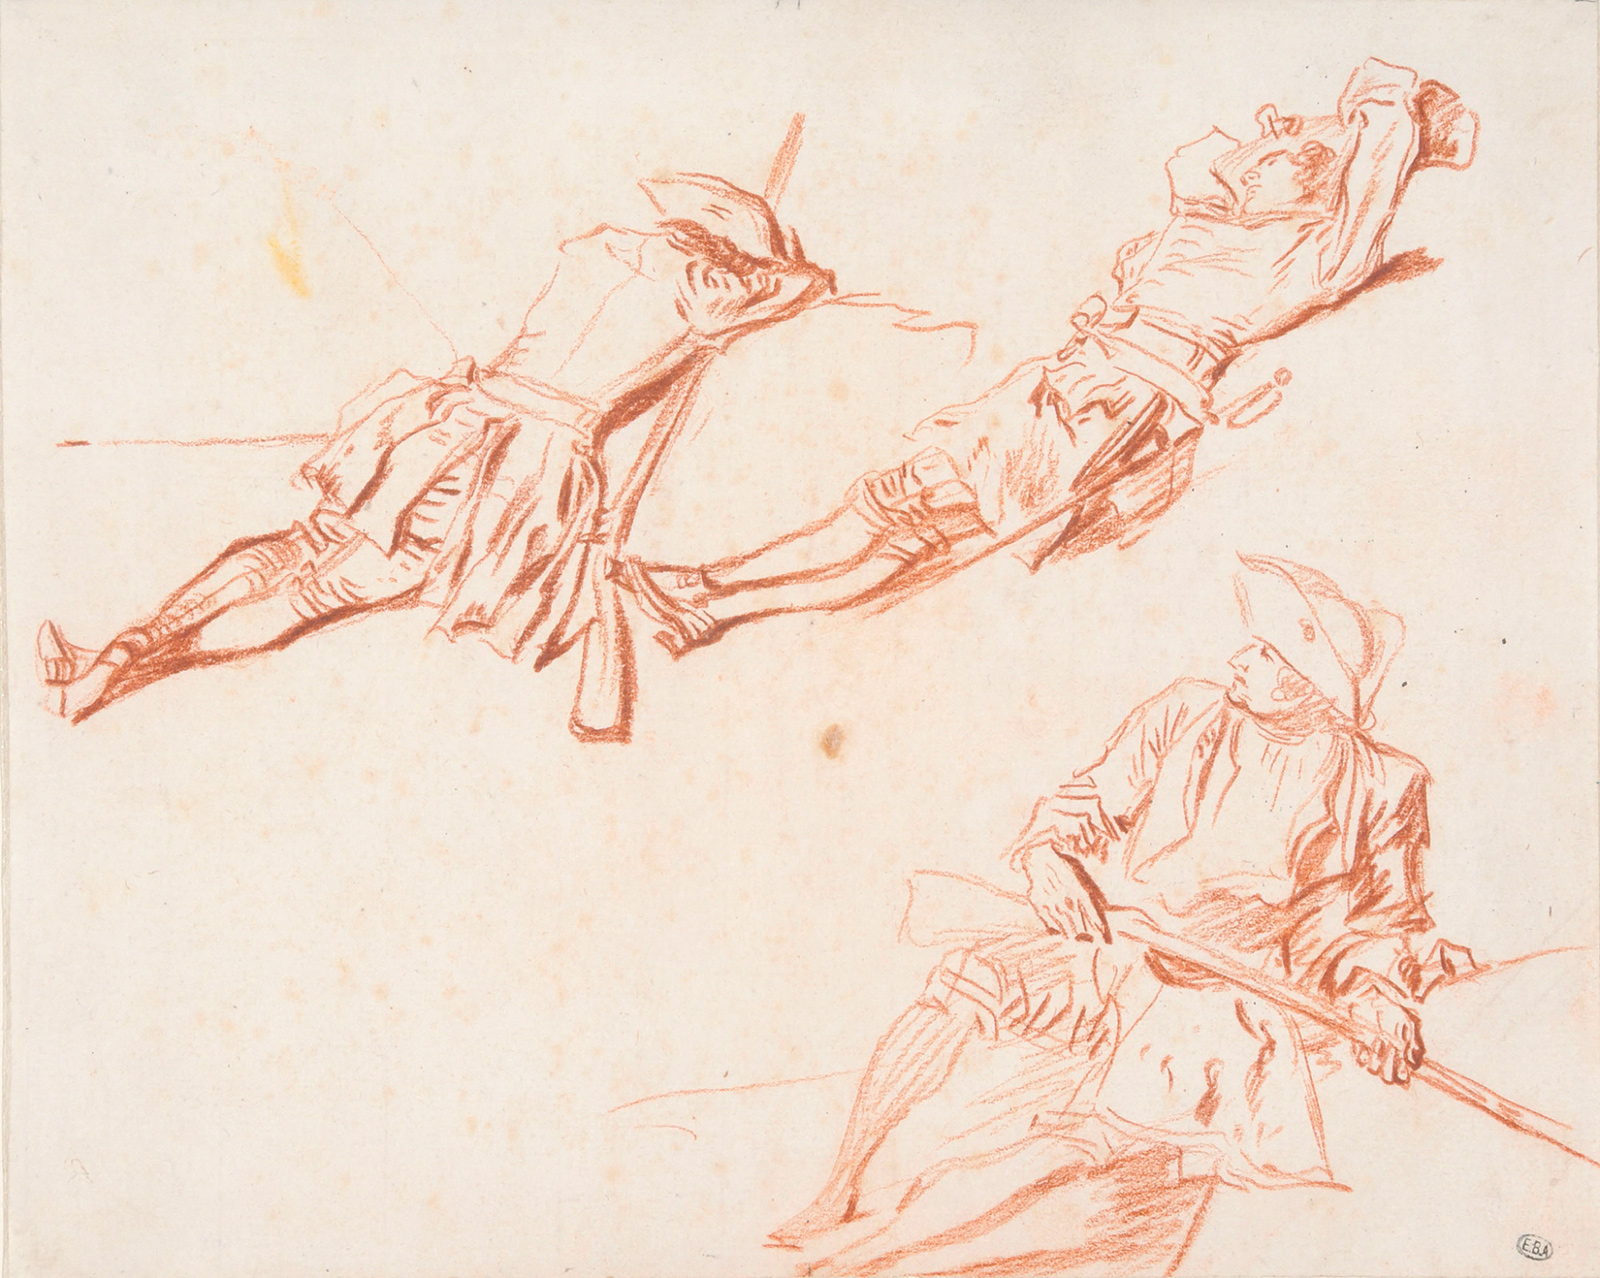 Jean-Antoine Watteau: Three Studies of Resting Soldiers, circa 1713–1714